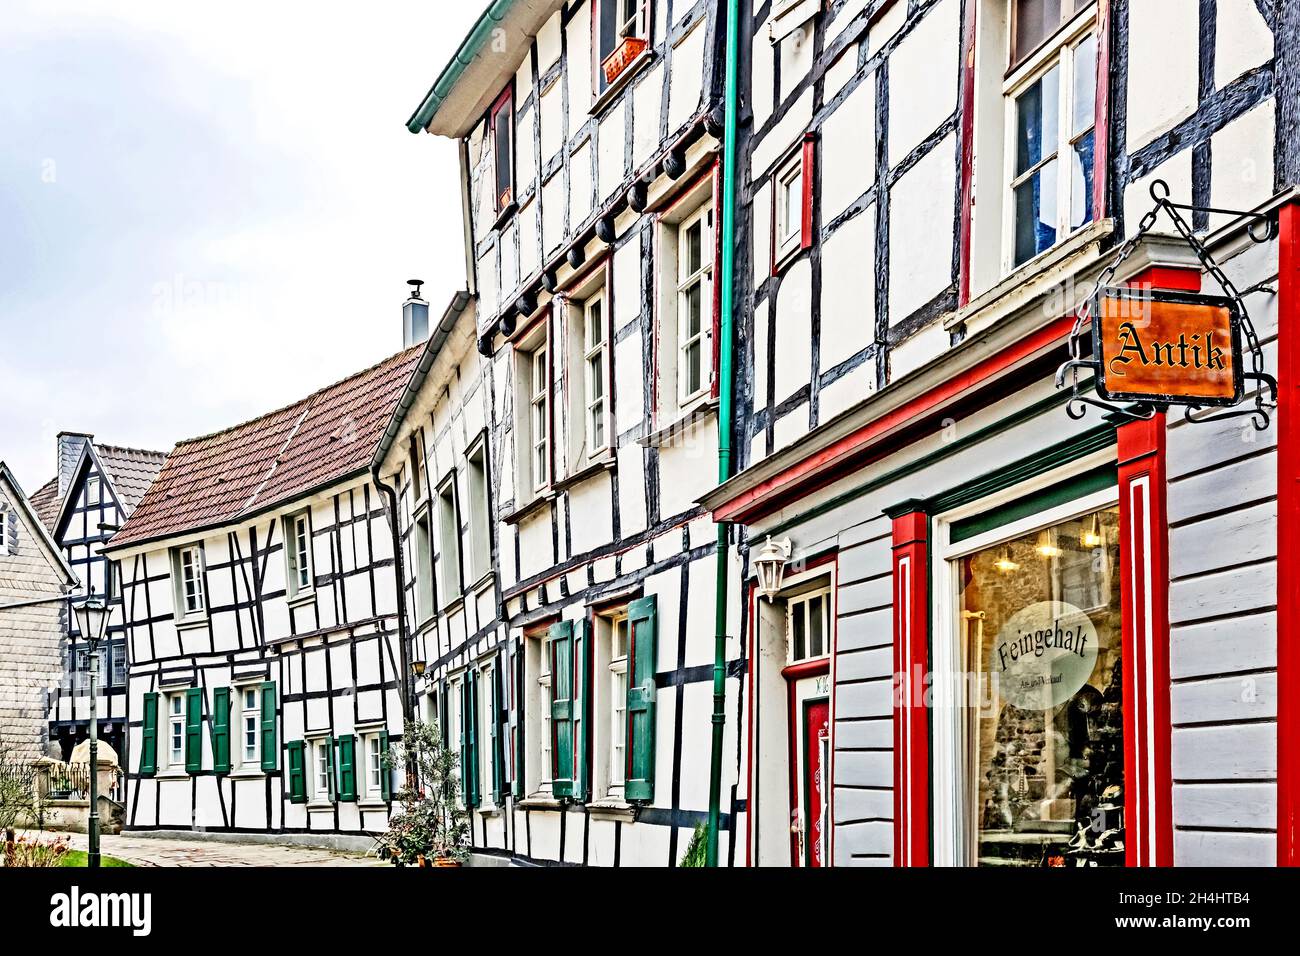 Mittelalterlicher Stadtkern von Hattingen, Nordrhein-Westfalen. Mediaeval Town Hattingen in North Rhine-Westphalia Stock Photo